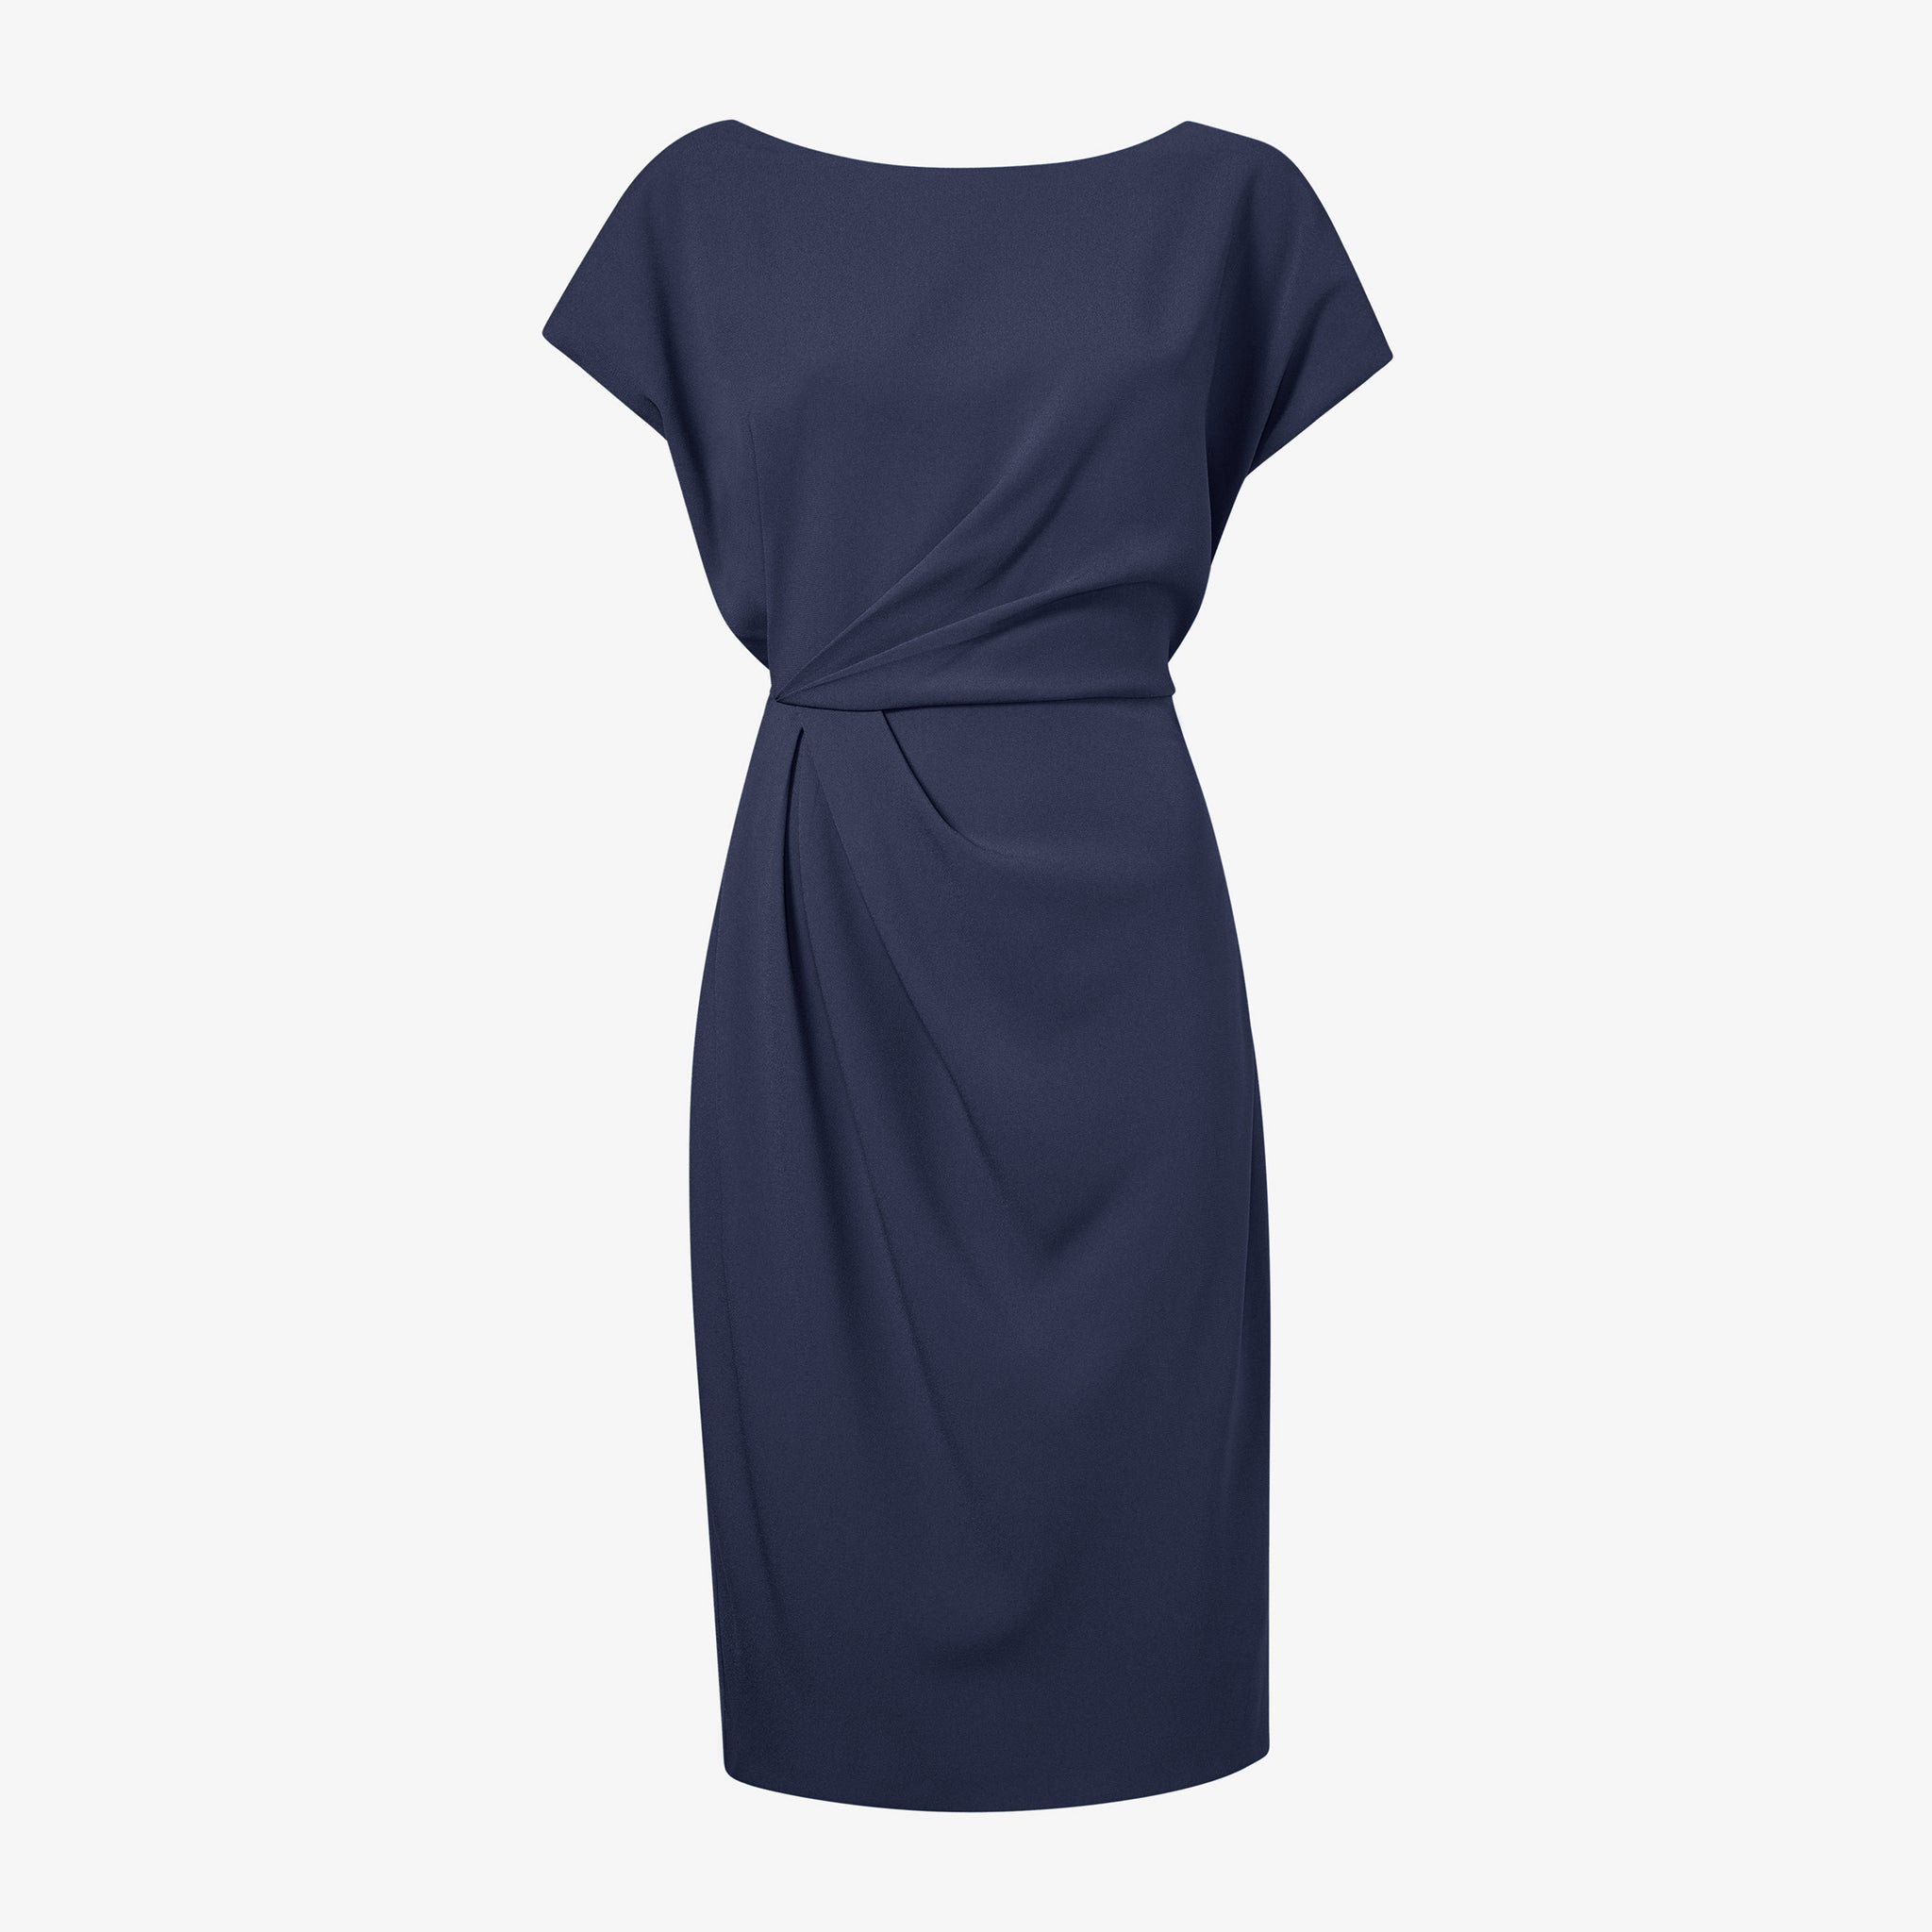 packshot image of the jillian dress in caspian blue